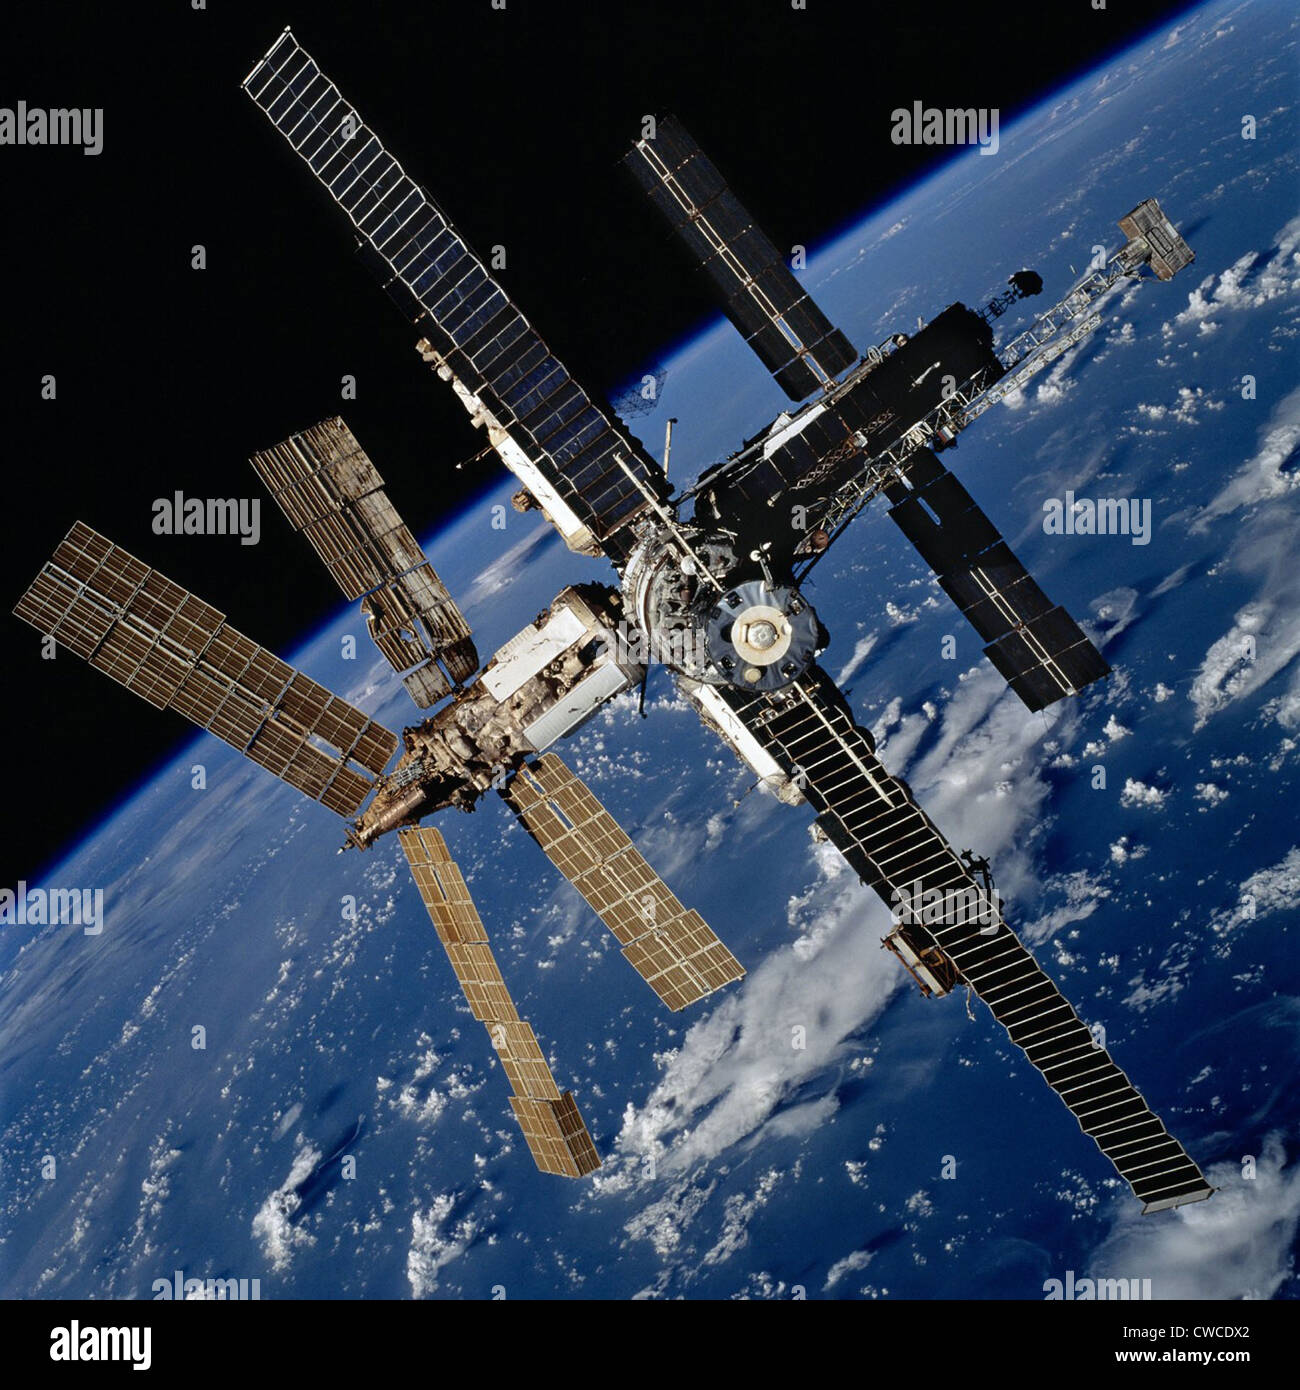 Russo la stazione spaziale Mir. La foto è stata scattata dal personale della navetta spaziale Atlantis dopo il disinserimento dalla stazione. 20 ott. Foto Stock